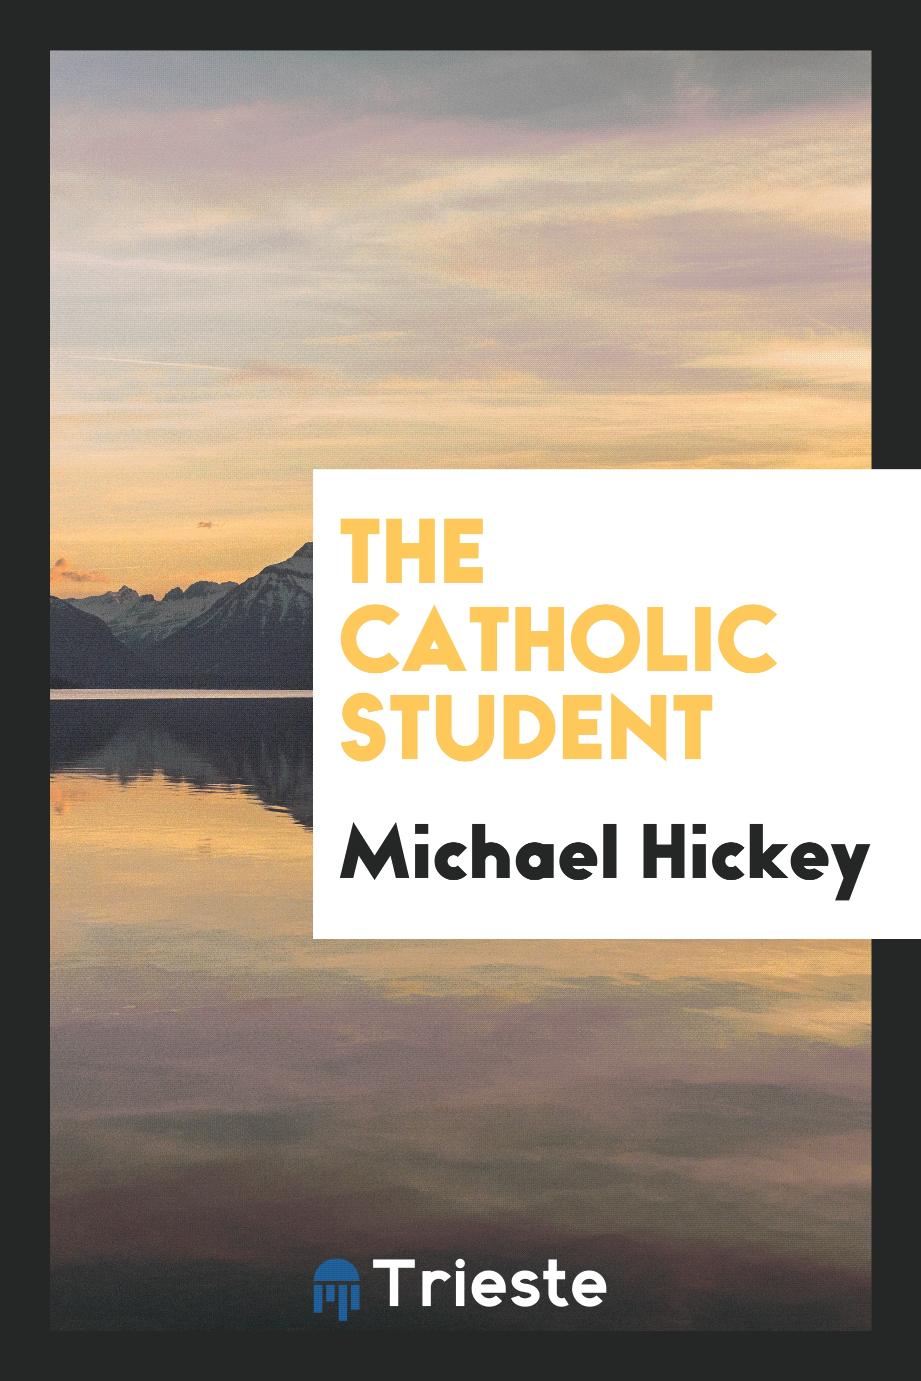 The Catholic student